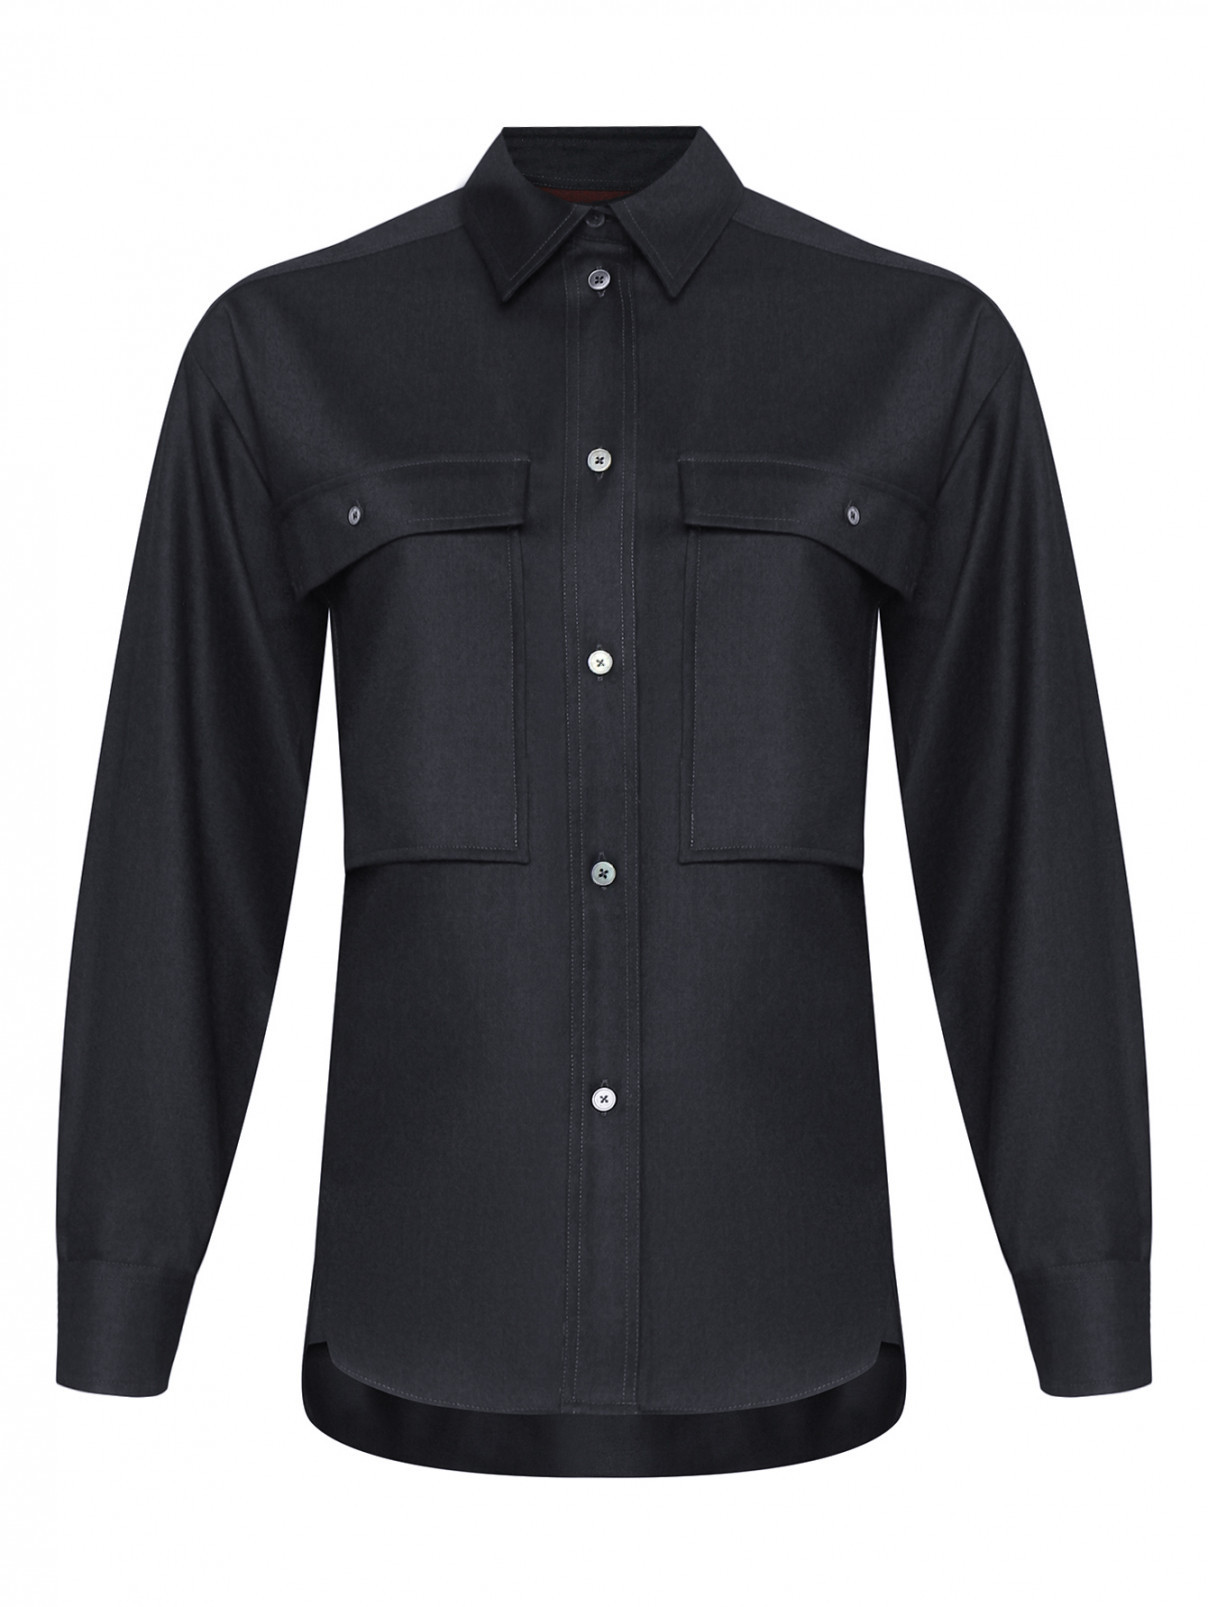 Блуза из шерсти и кашемира с карманами Paul Smith  –  Общий вид  – Цвет:  Черный